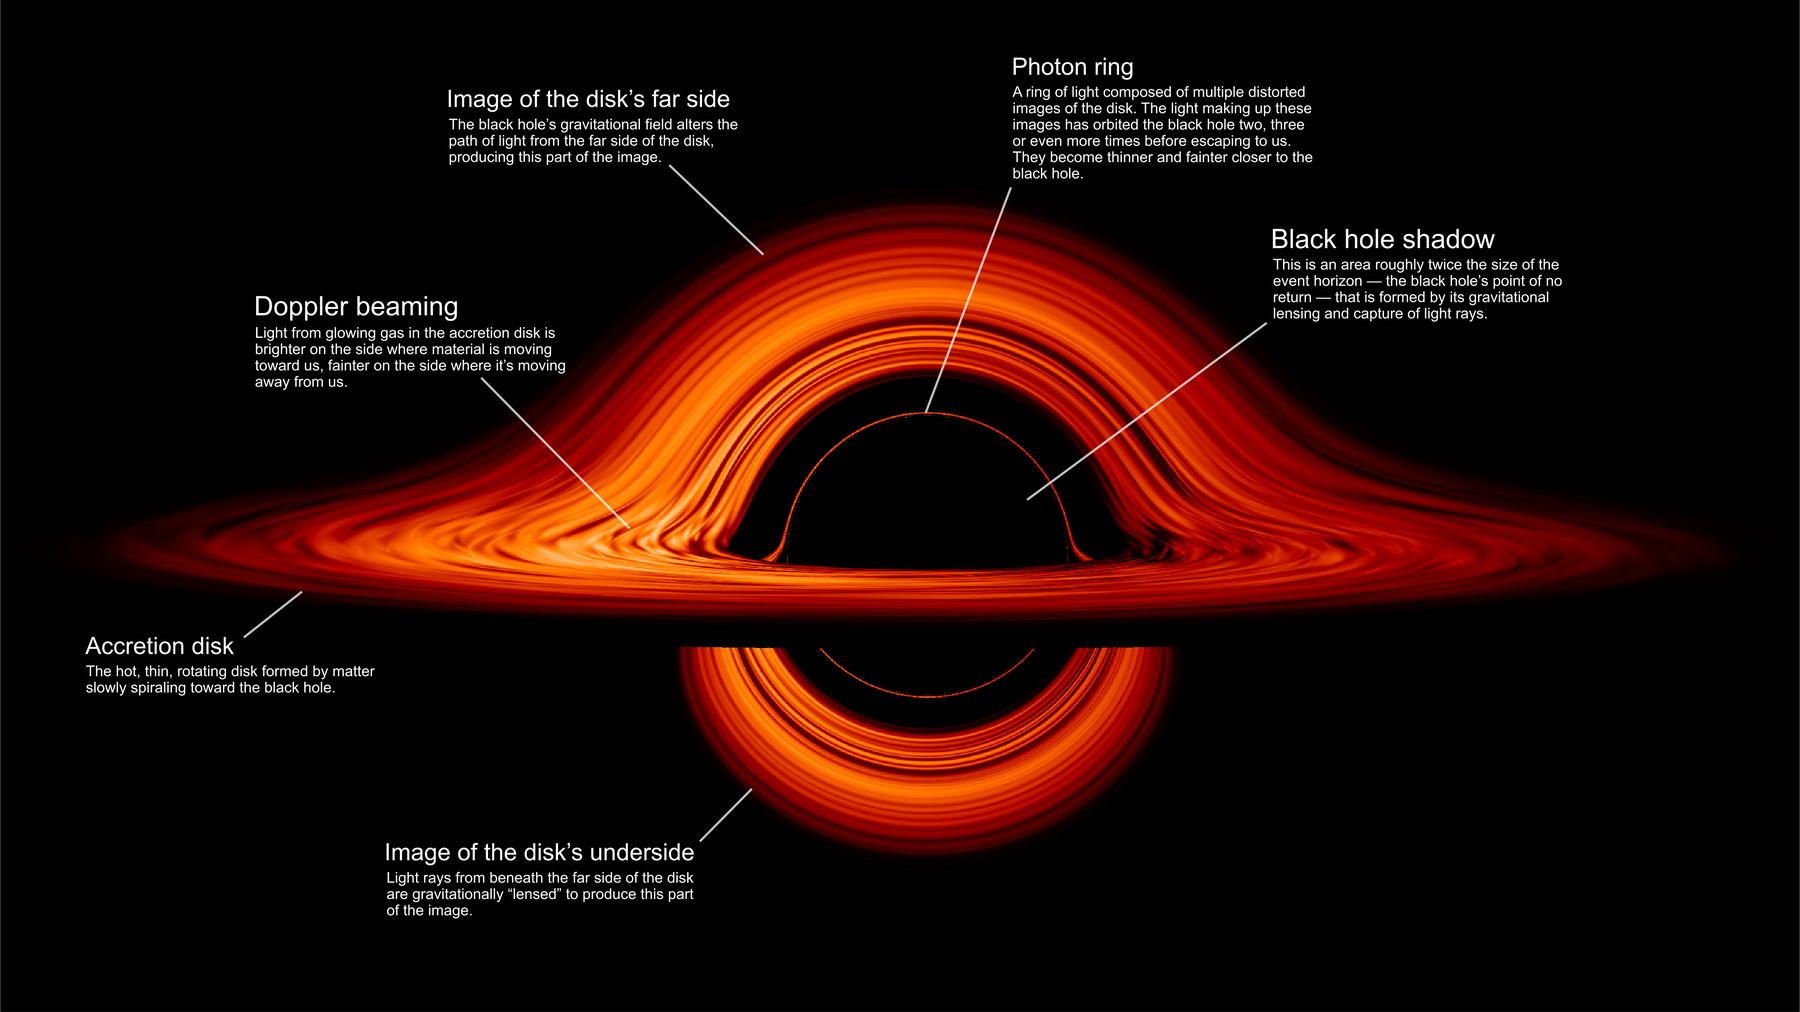 นักดาราศาสตร์คาดว่า ในหลุมดำอาจประกอบด้วยวงแหวนโฟตอนจำนวนมาก